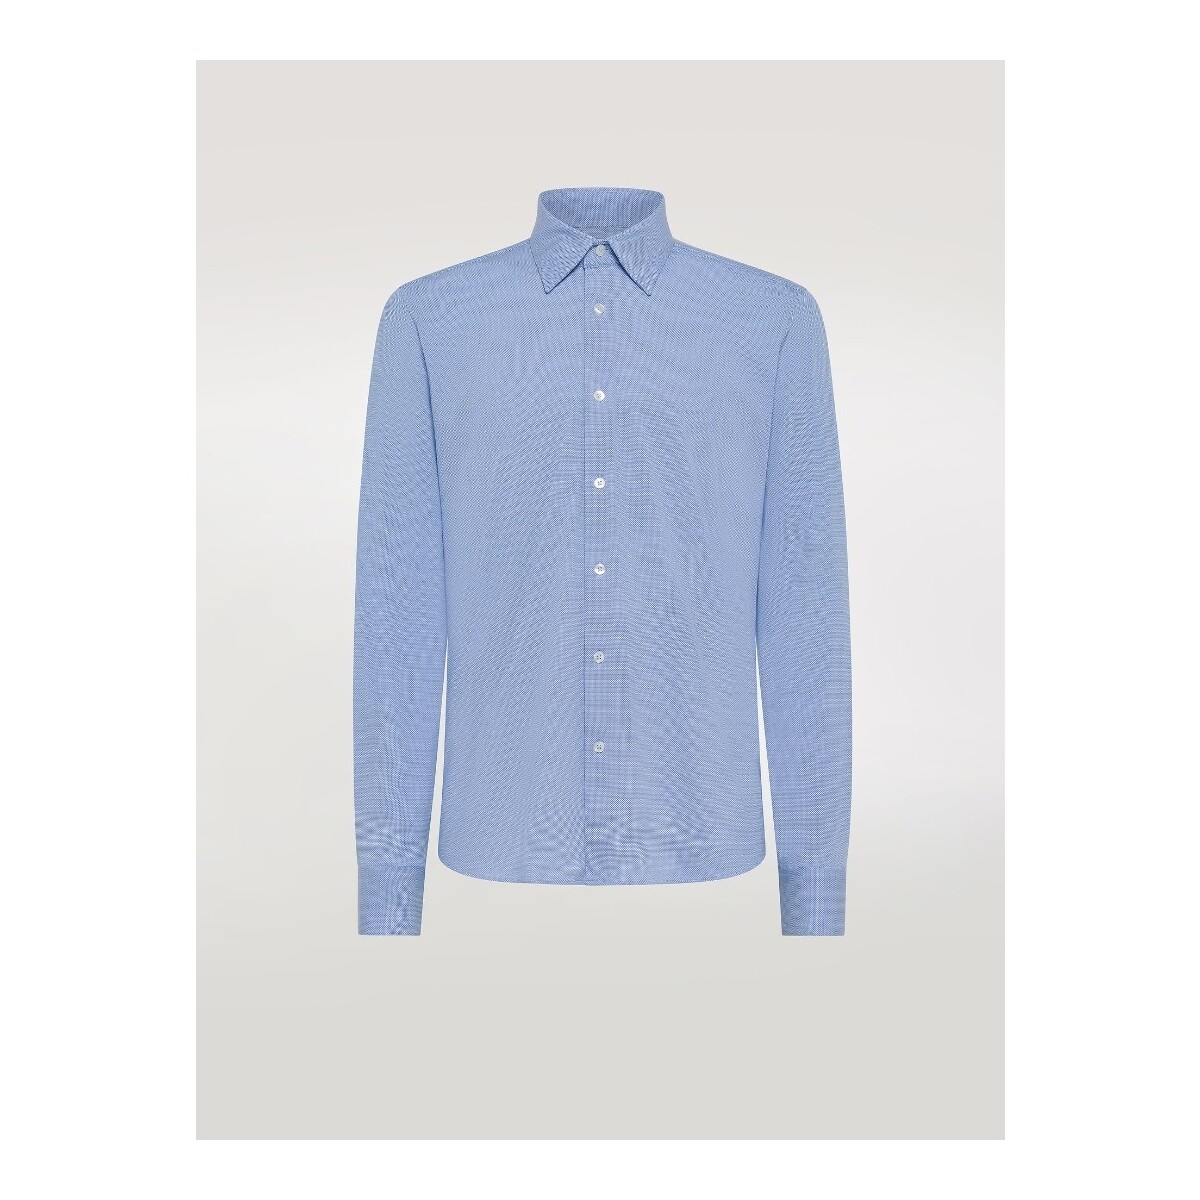 Vêtements Homme Chemises manches longues Rrd - Roberto Ricci Designs S24253 Bleu